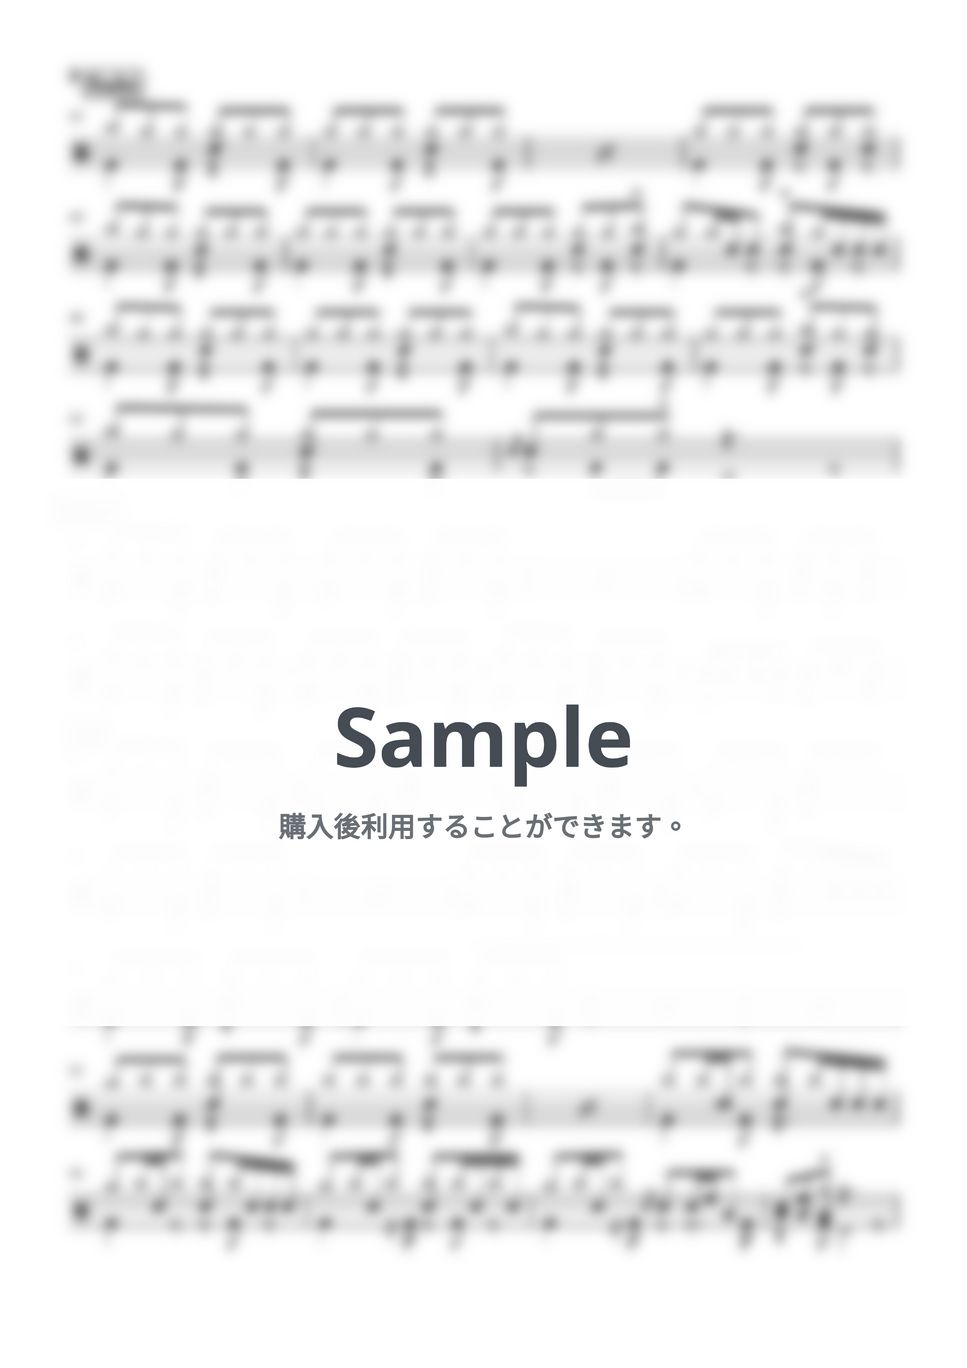 きのこ帝国 - スカルプチャー (ドラム譜面) by cabal